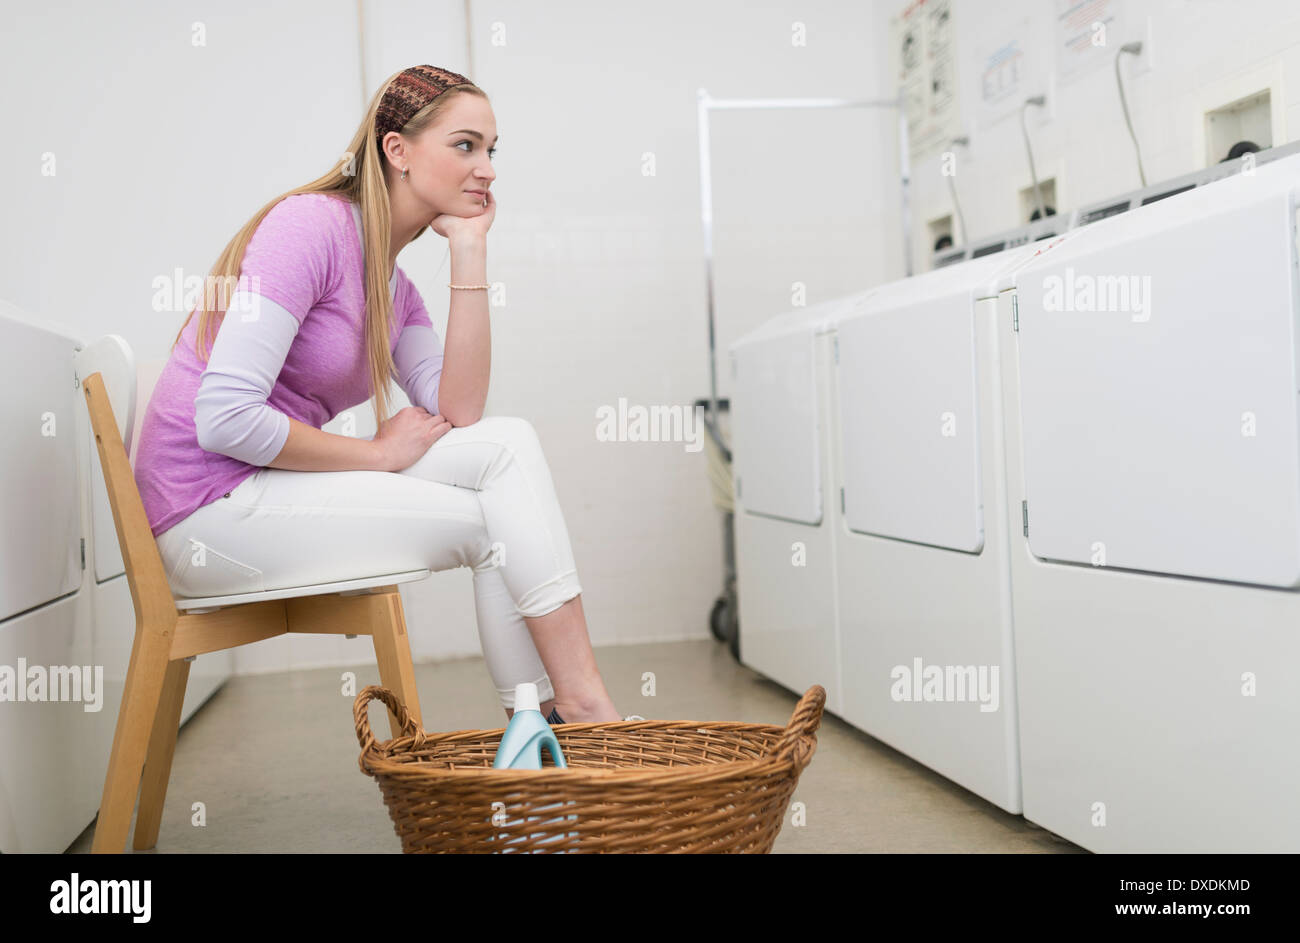 Femme attendant dans la laverie automatique Banque D'Images